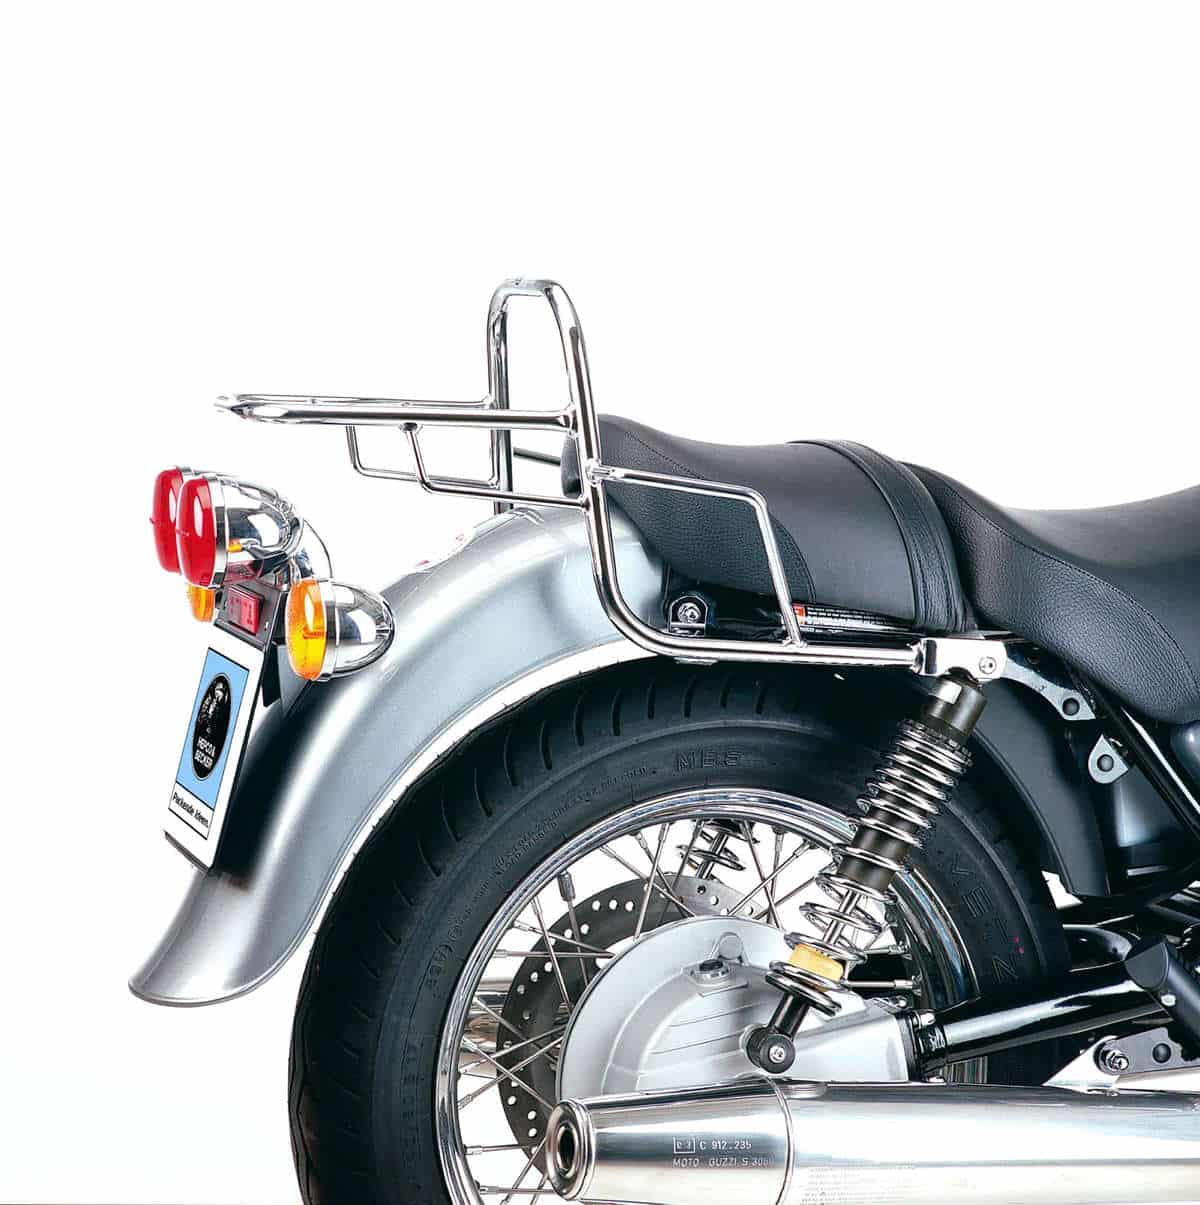 Topcase carrier tube-type chrome for Moto Guzzi California Jackal (1999-)